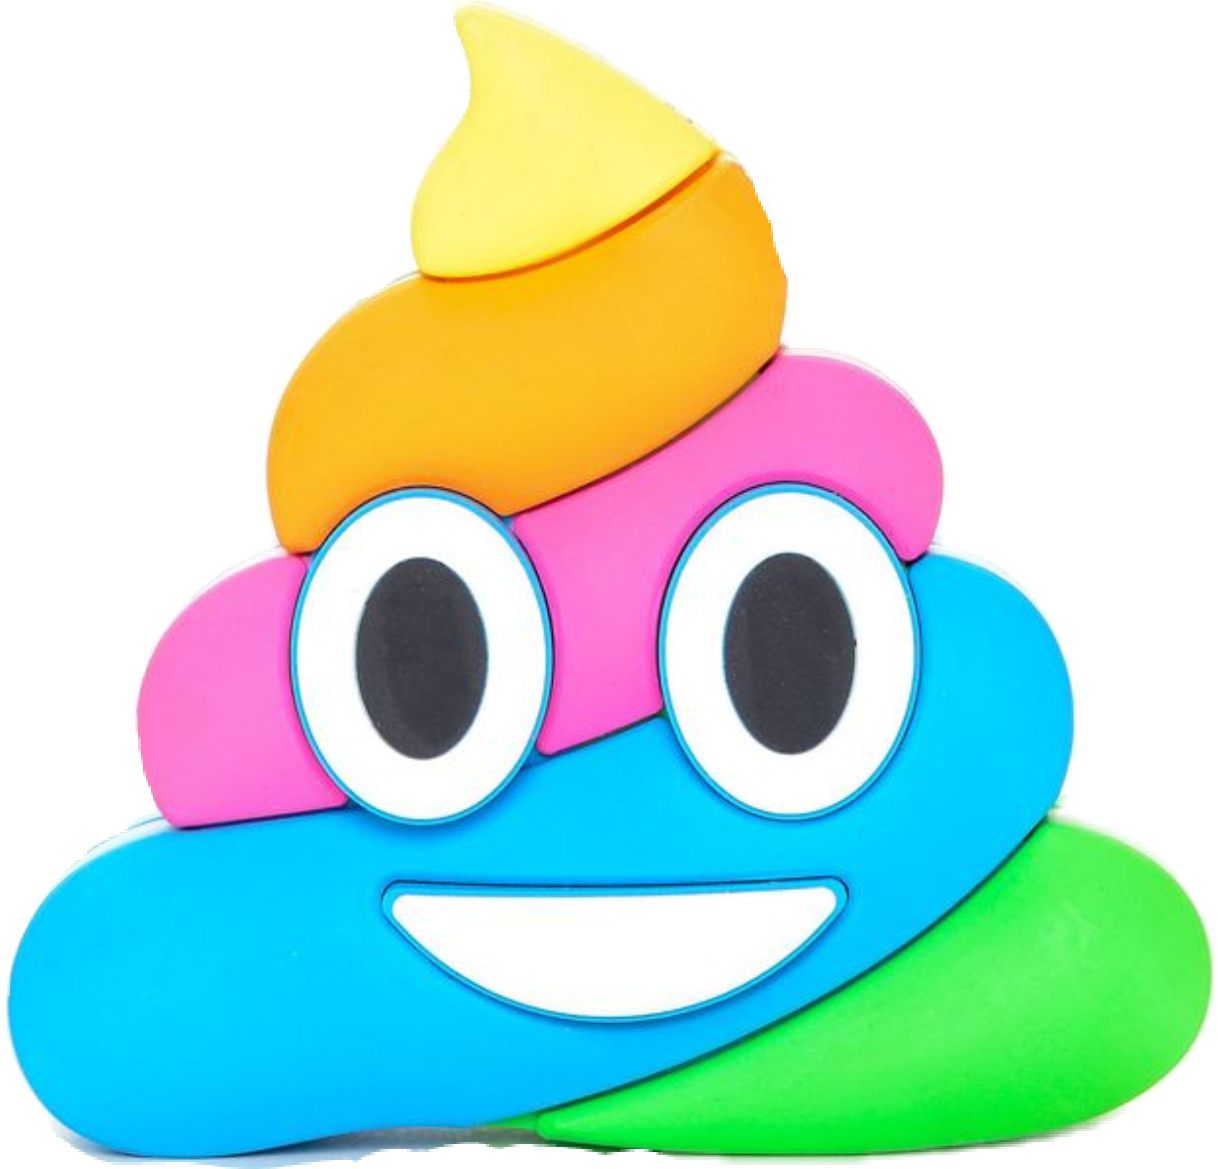 Pile Of Poo Emoji Feces Rainbow Smile - Rainbow Poop Emoji Png (1218x1169)